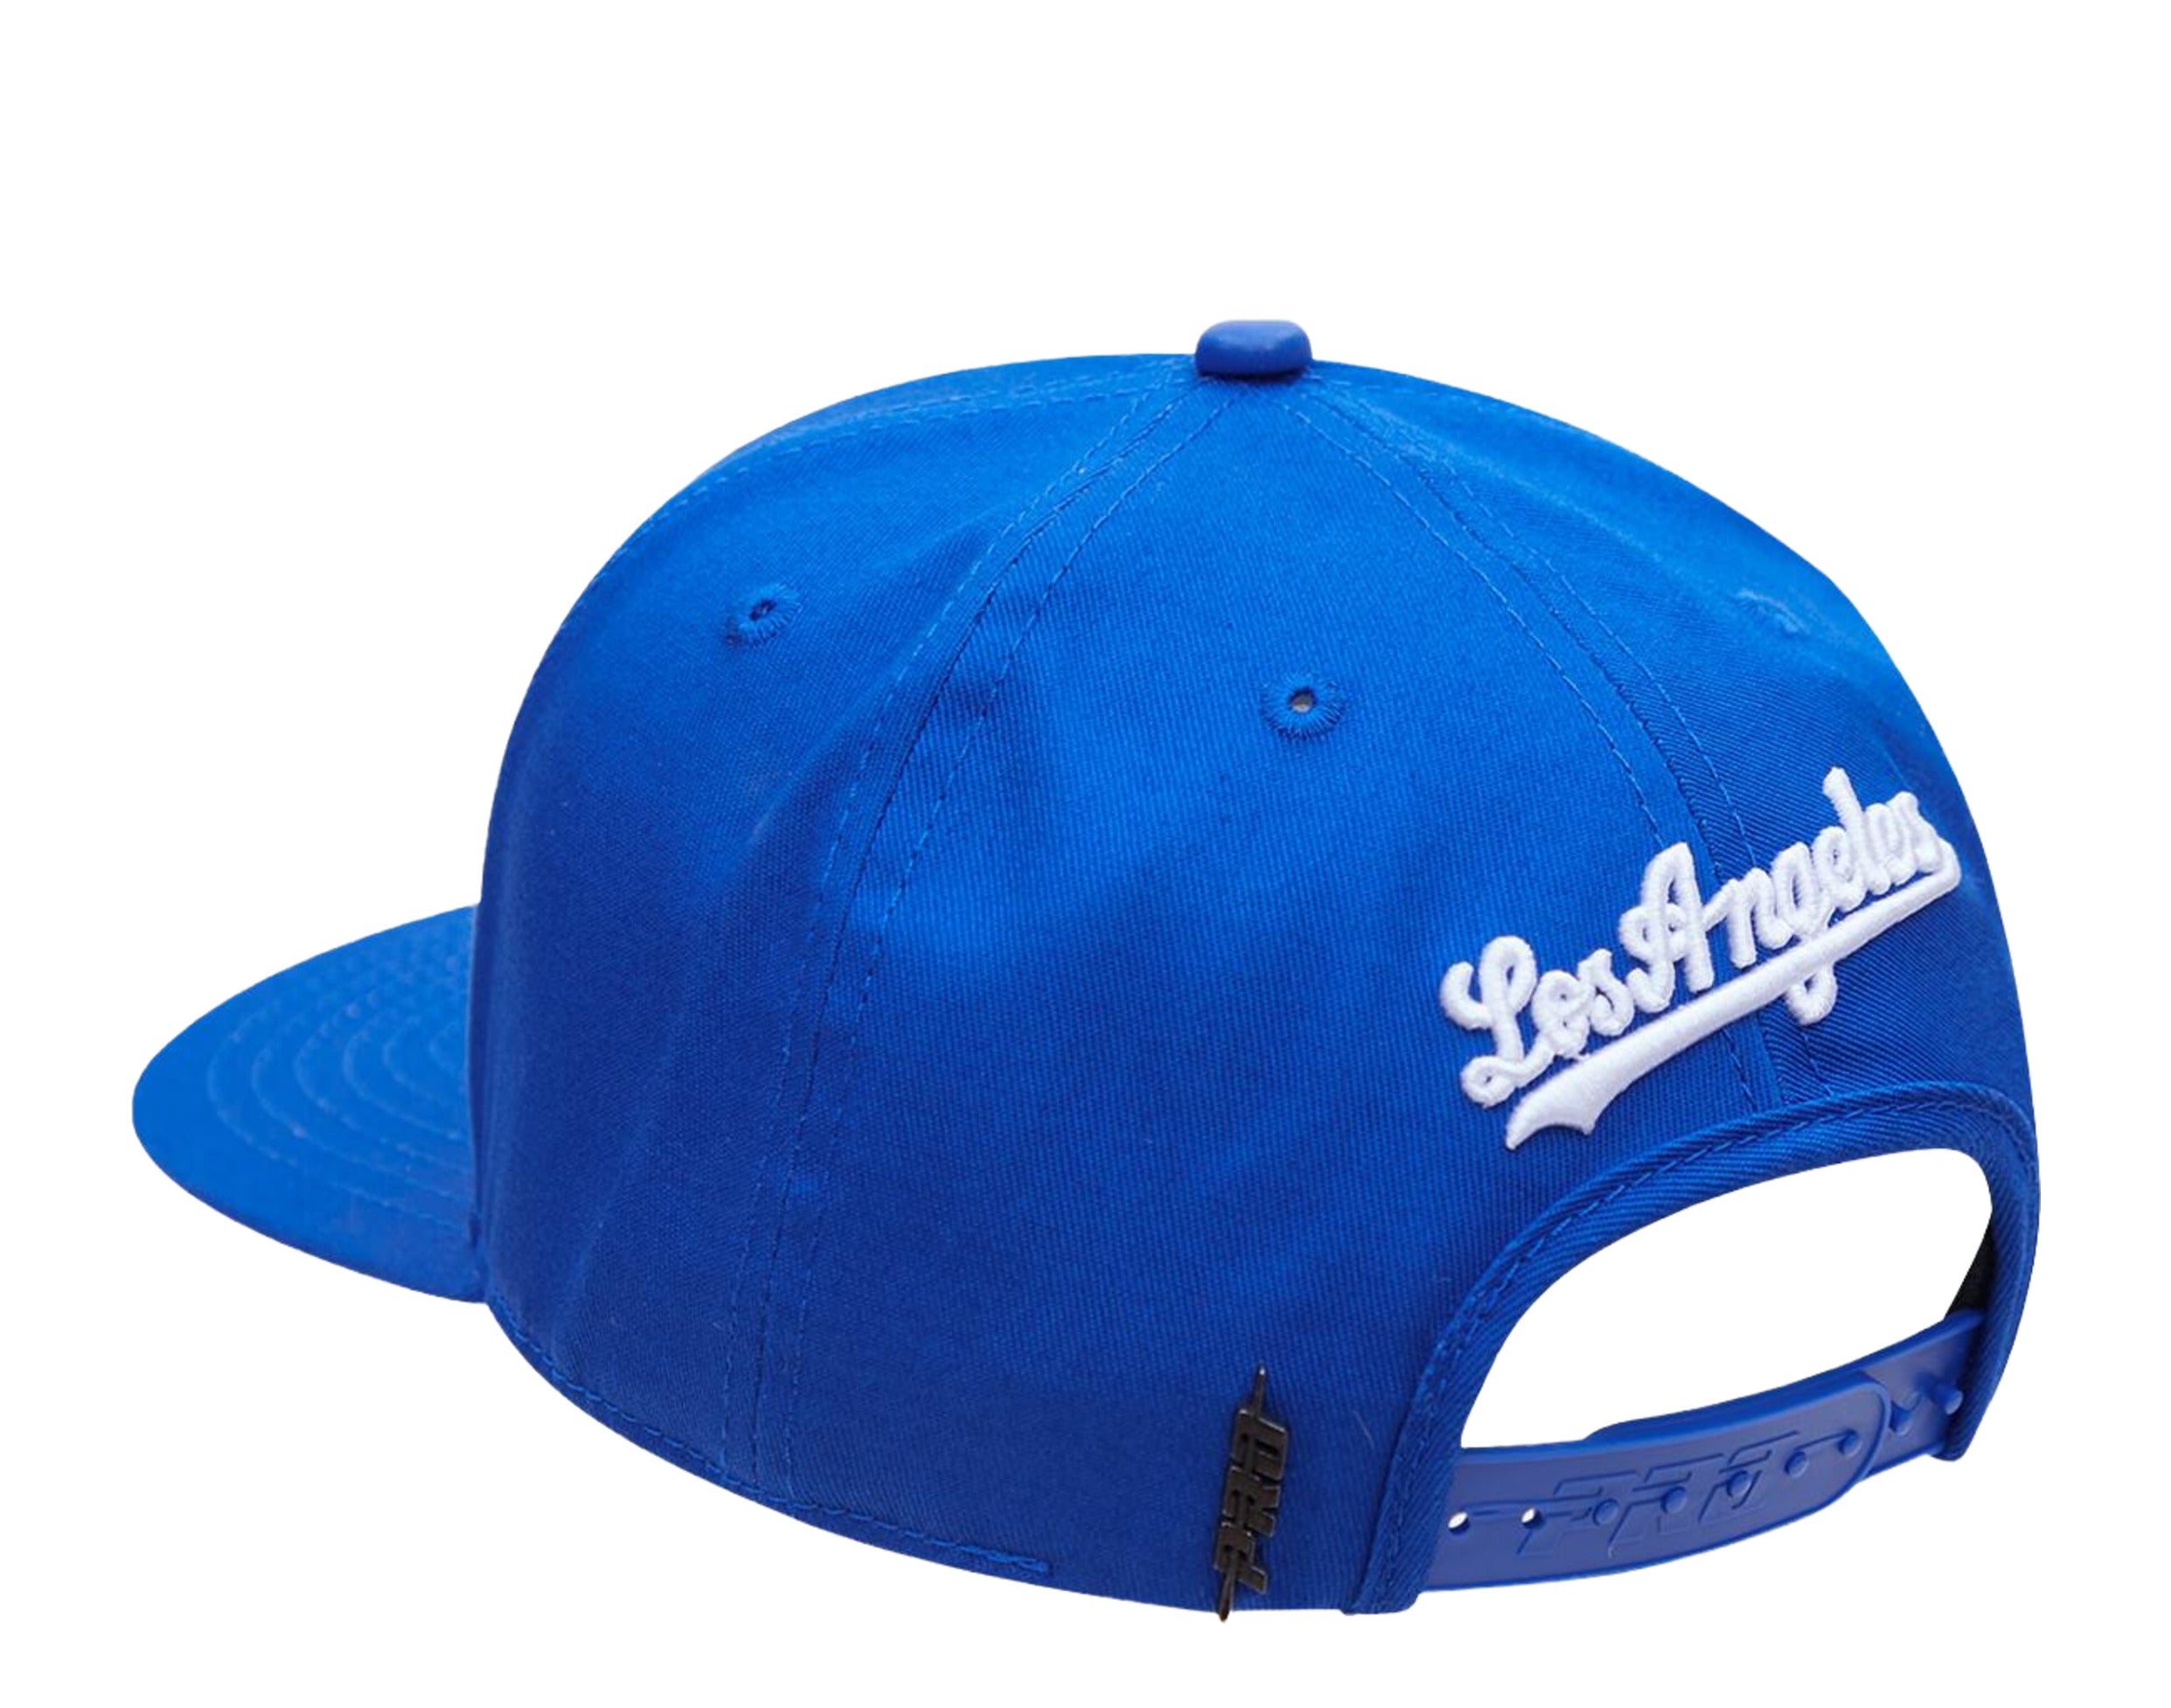 Pro Standard Short Set - Tie Dye LA Dodgers - Purple/Blue/Aqua - LLD131817  - ShopperBoard